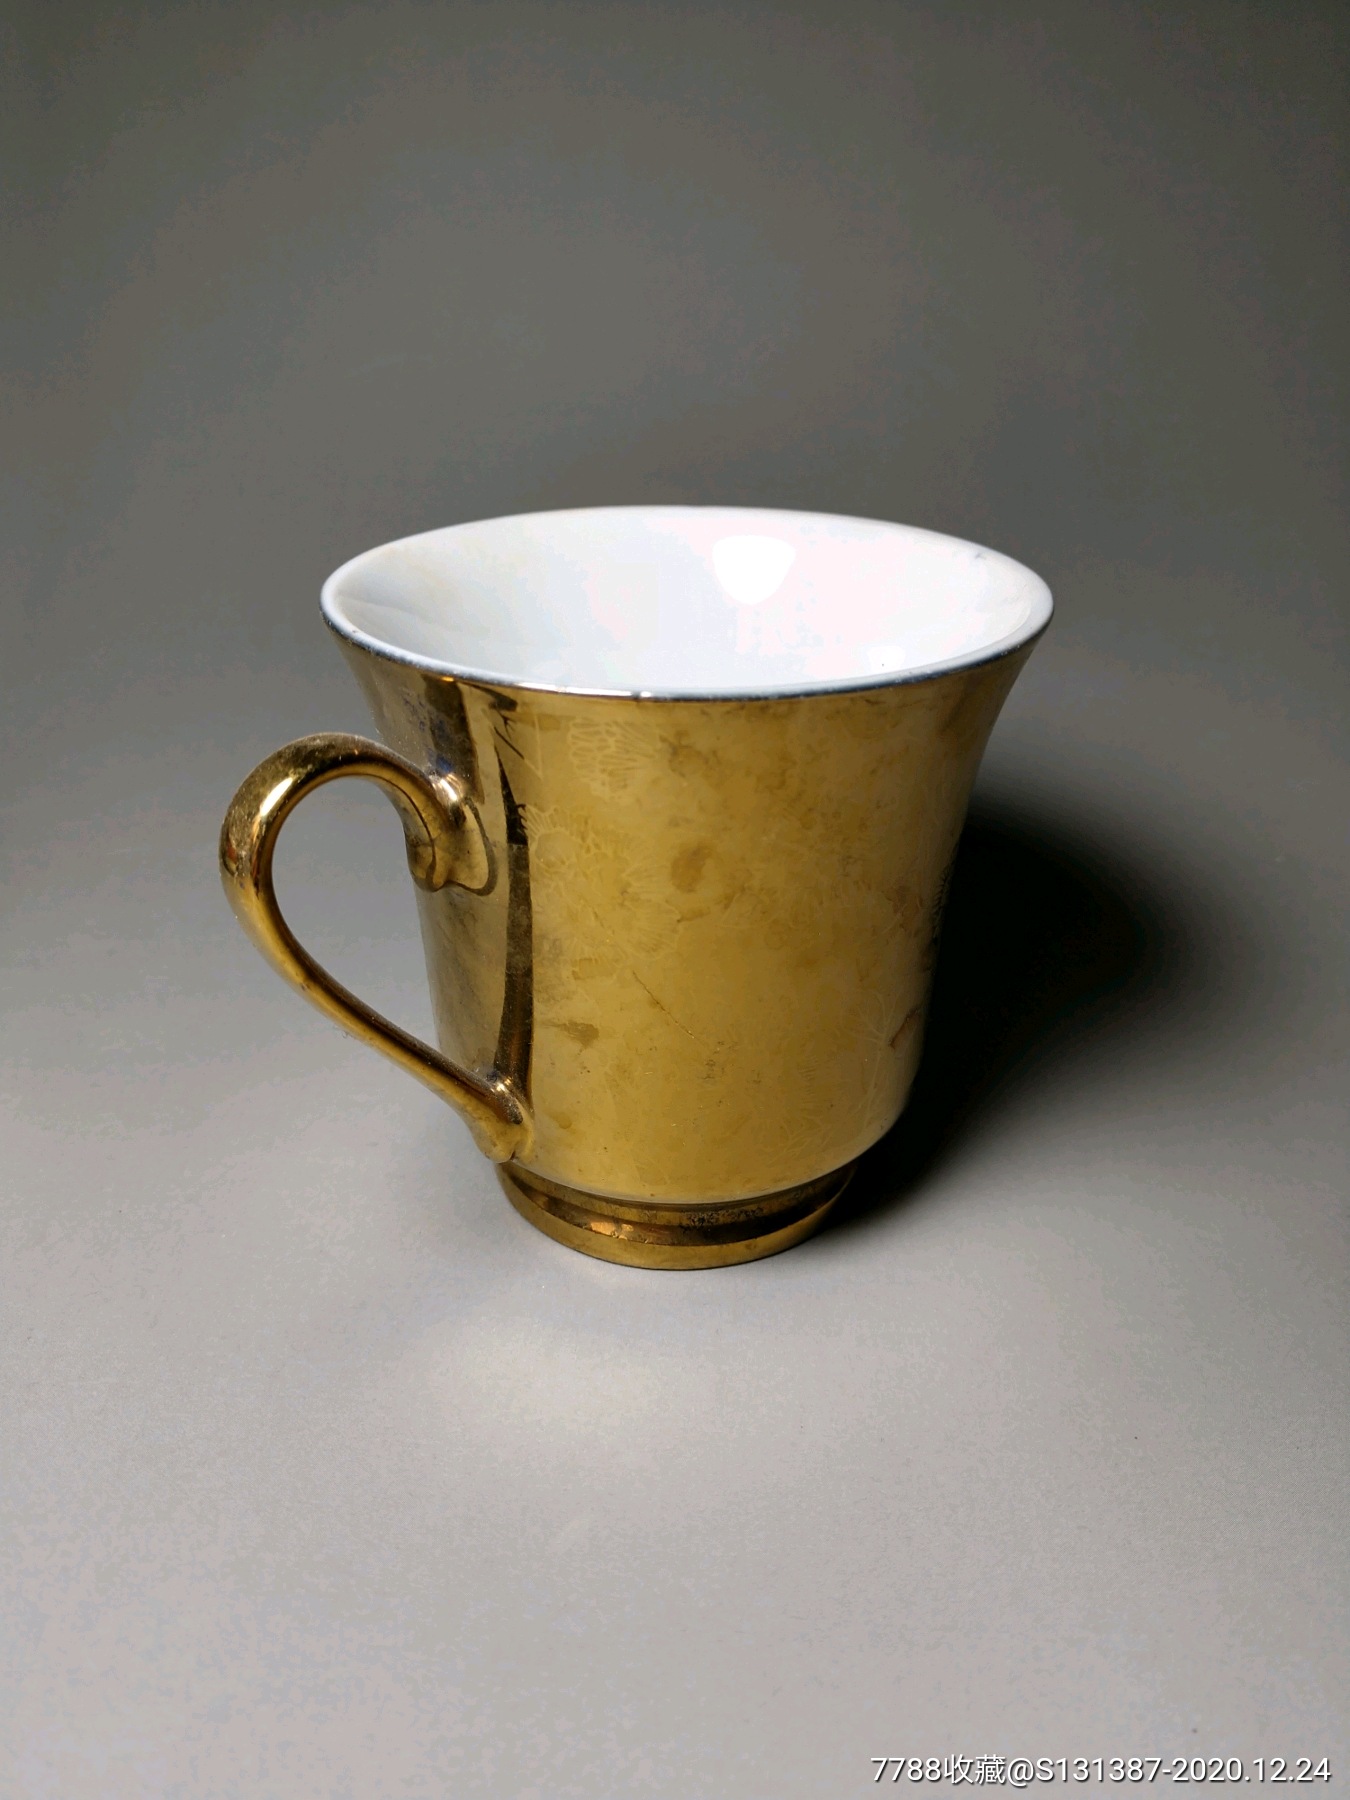 全新~五十年代出口欧洲的白瓷描金彩绘咖啡杯